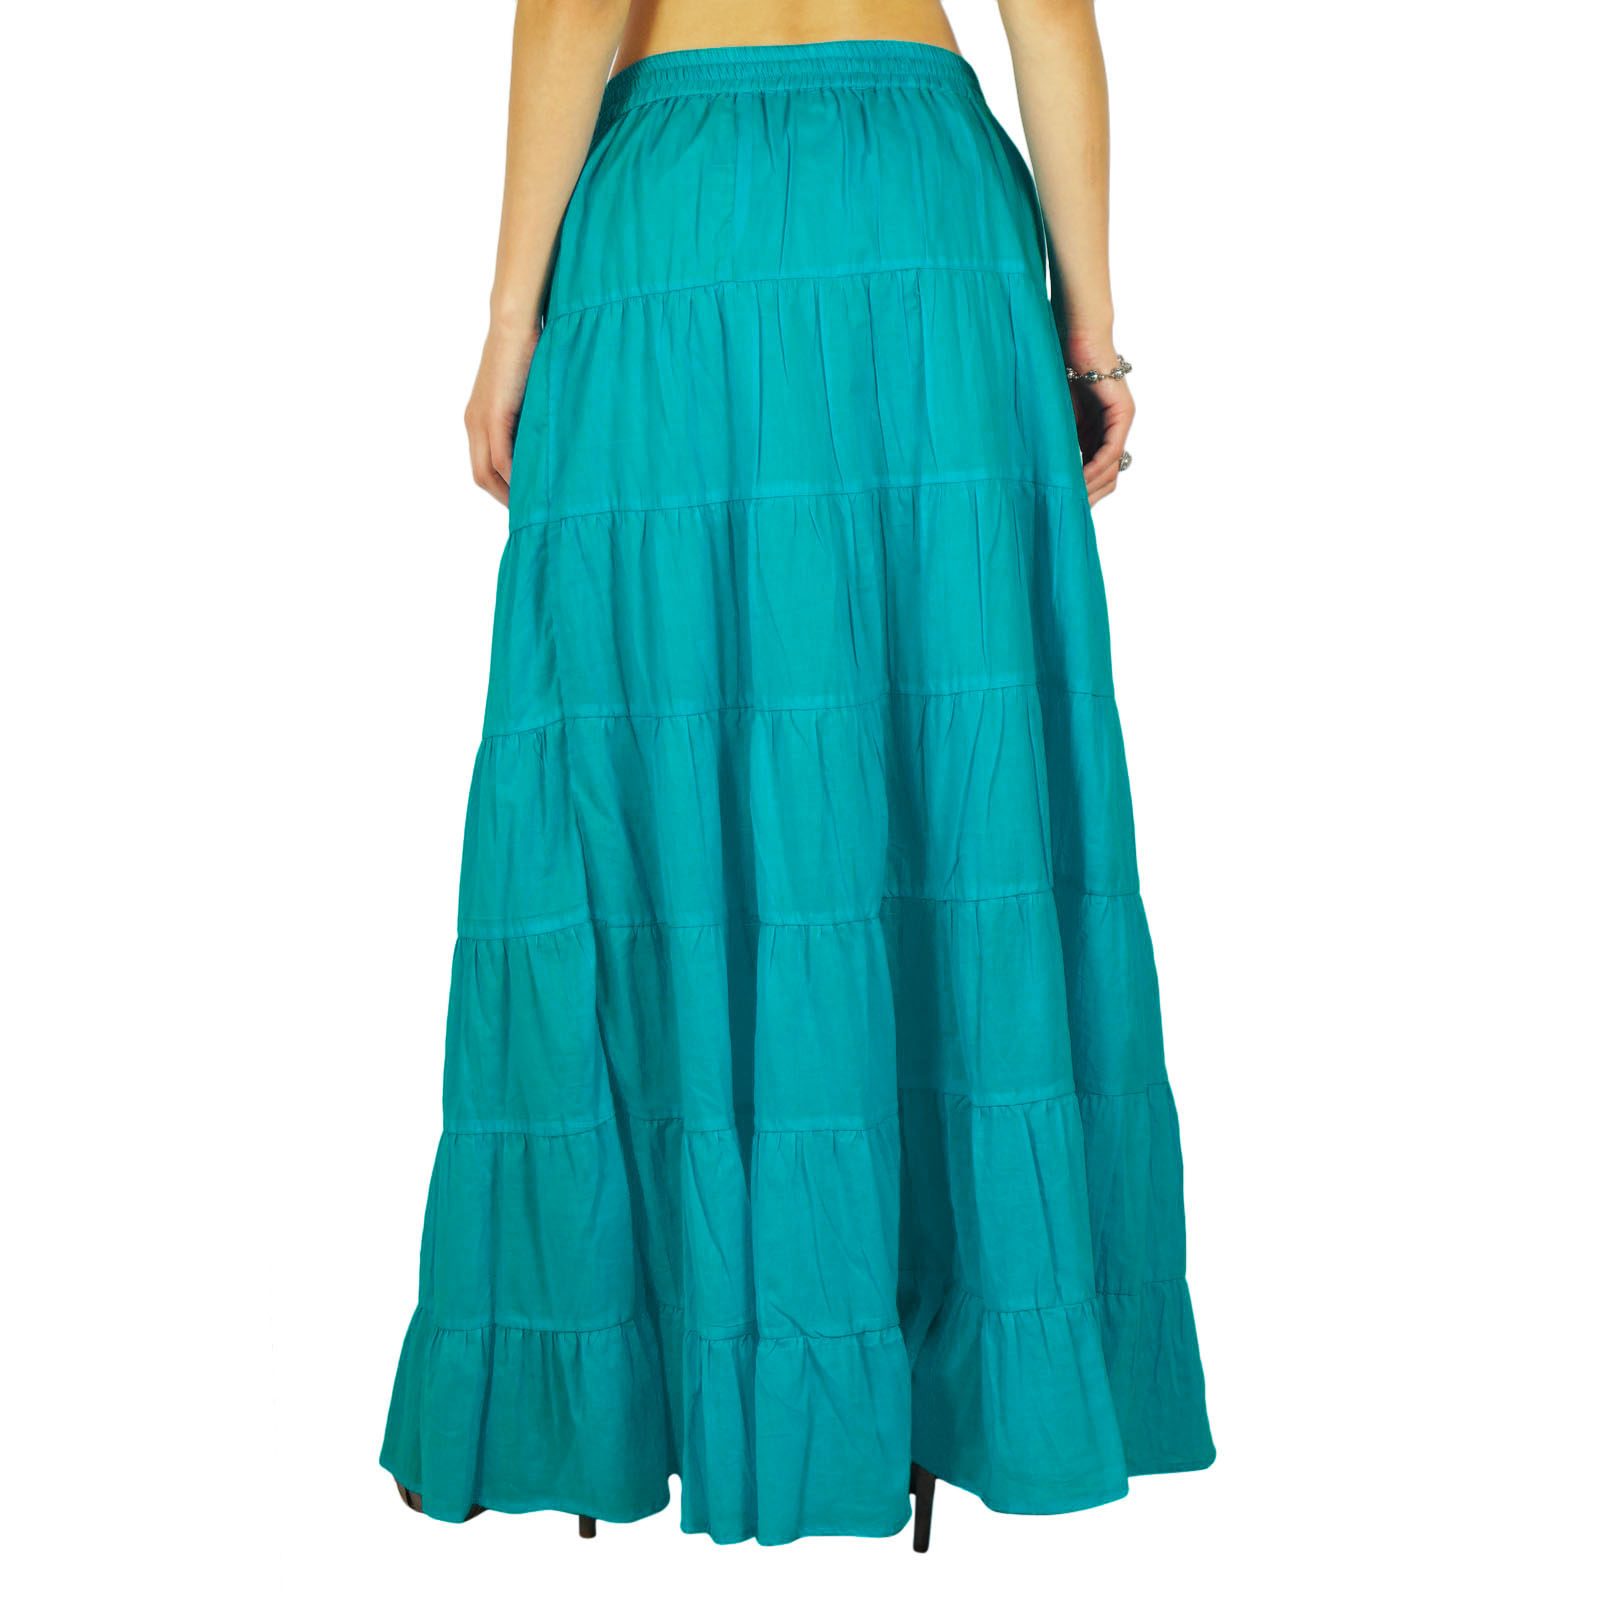 Phagun Women's Long Skirt Bohemian Gypsy Tiered Cotton Maxi Skirt-VvN ...